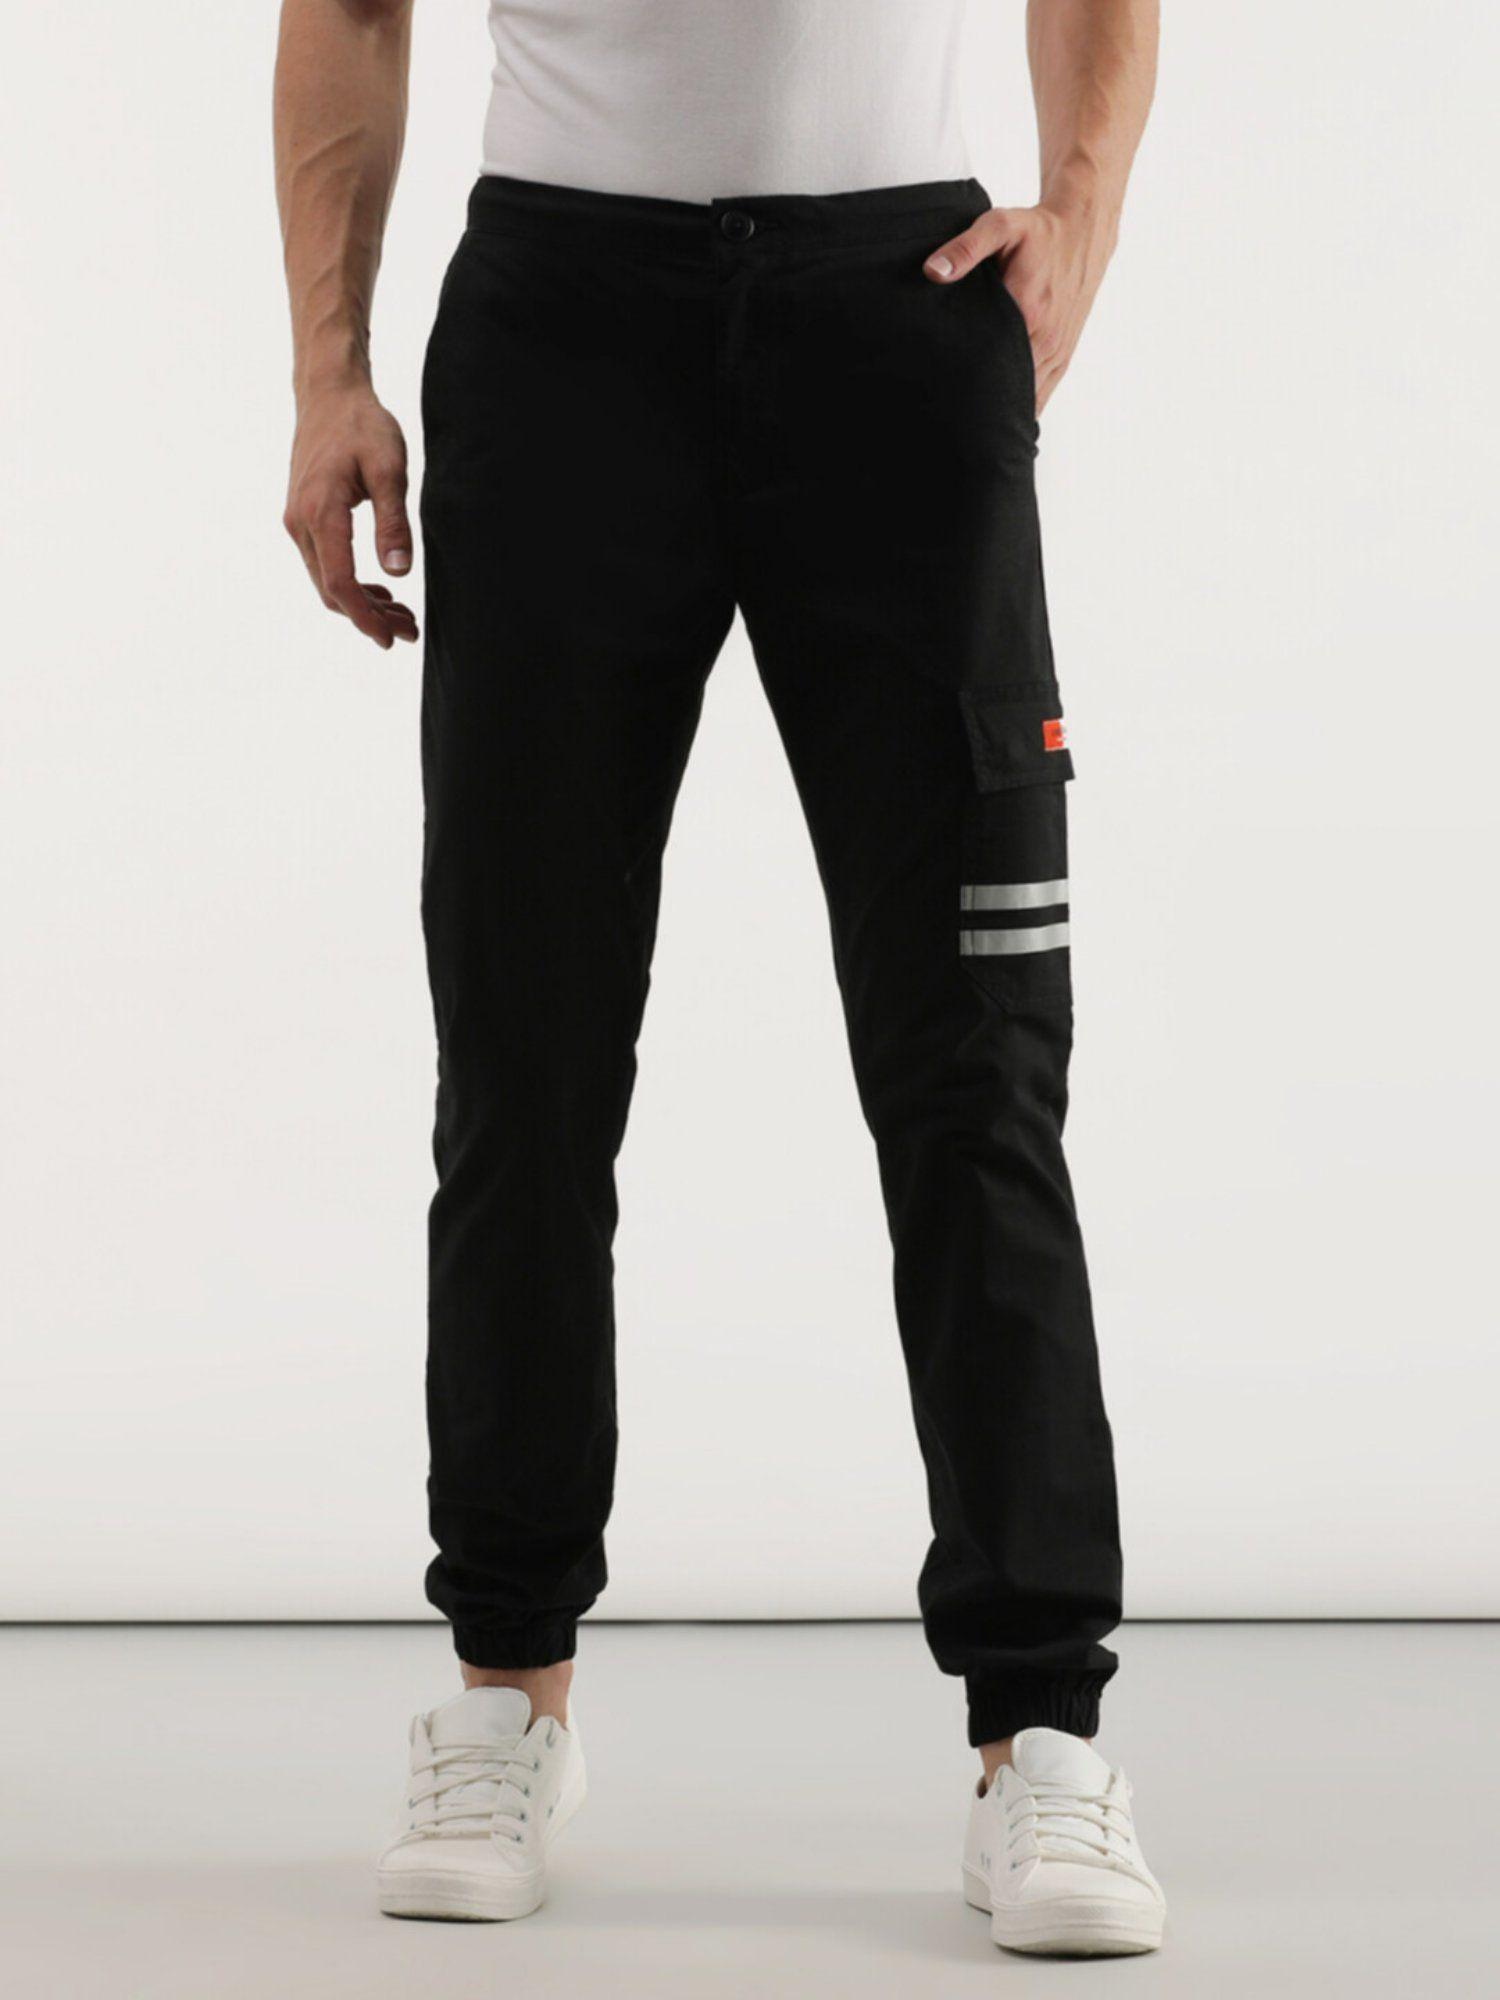 men-jogger-fit-black-trouser-regular